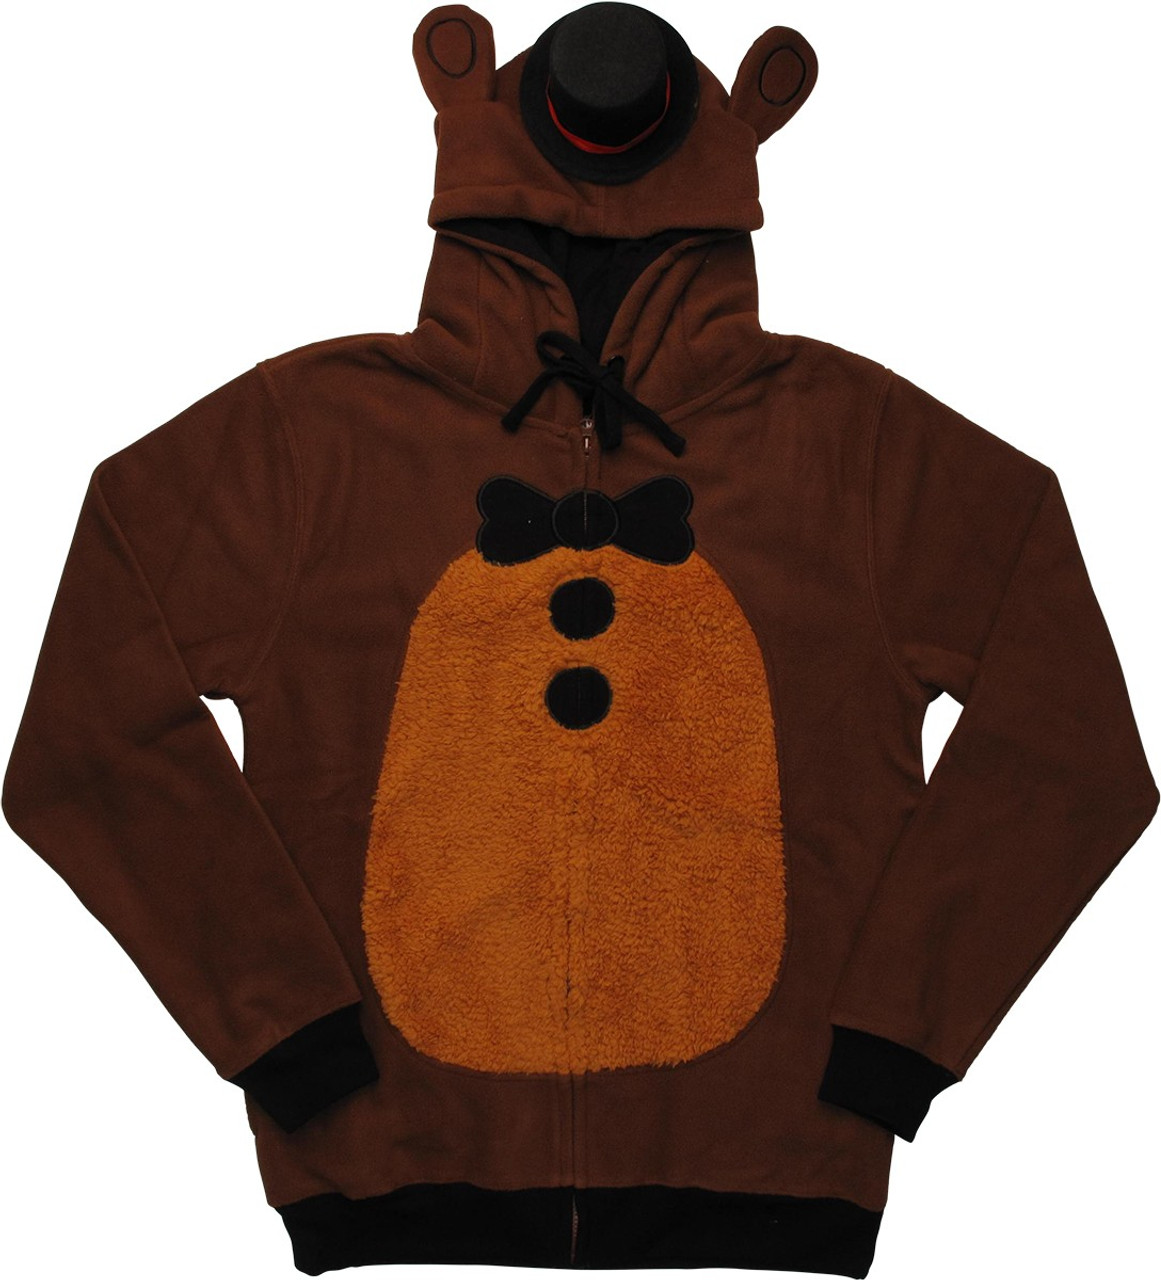 Shop Freddy Fazbear Costume online